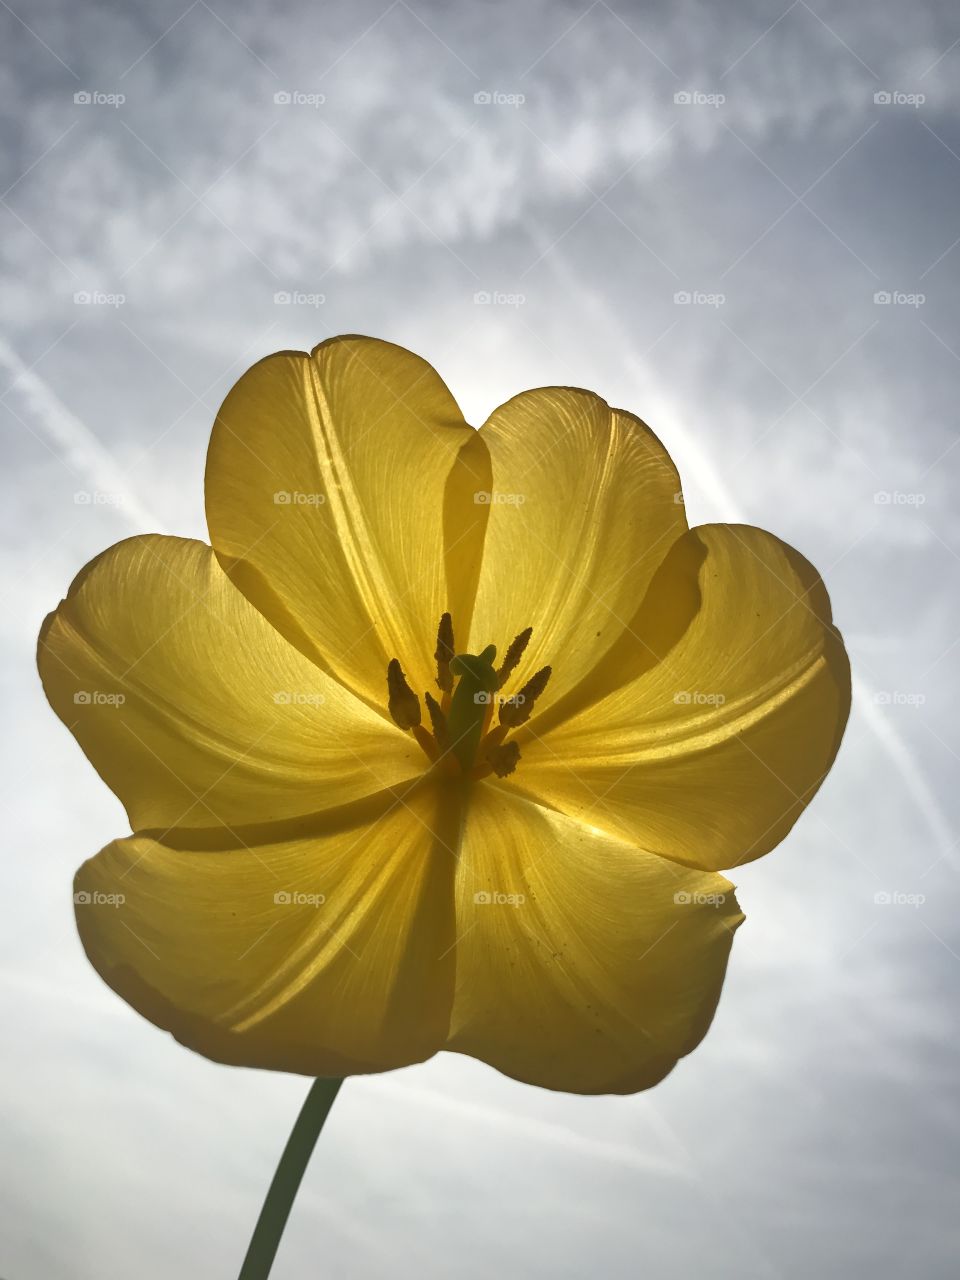 Yellow tulip 